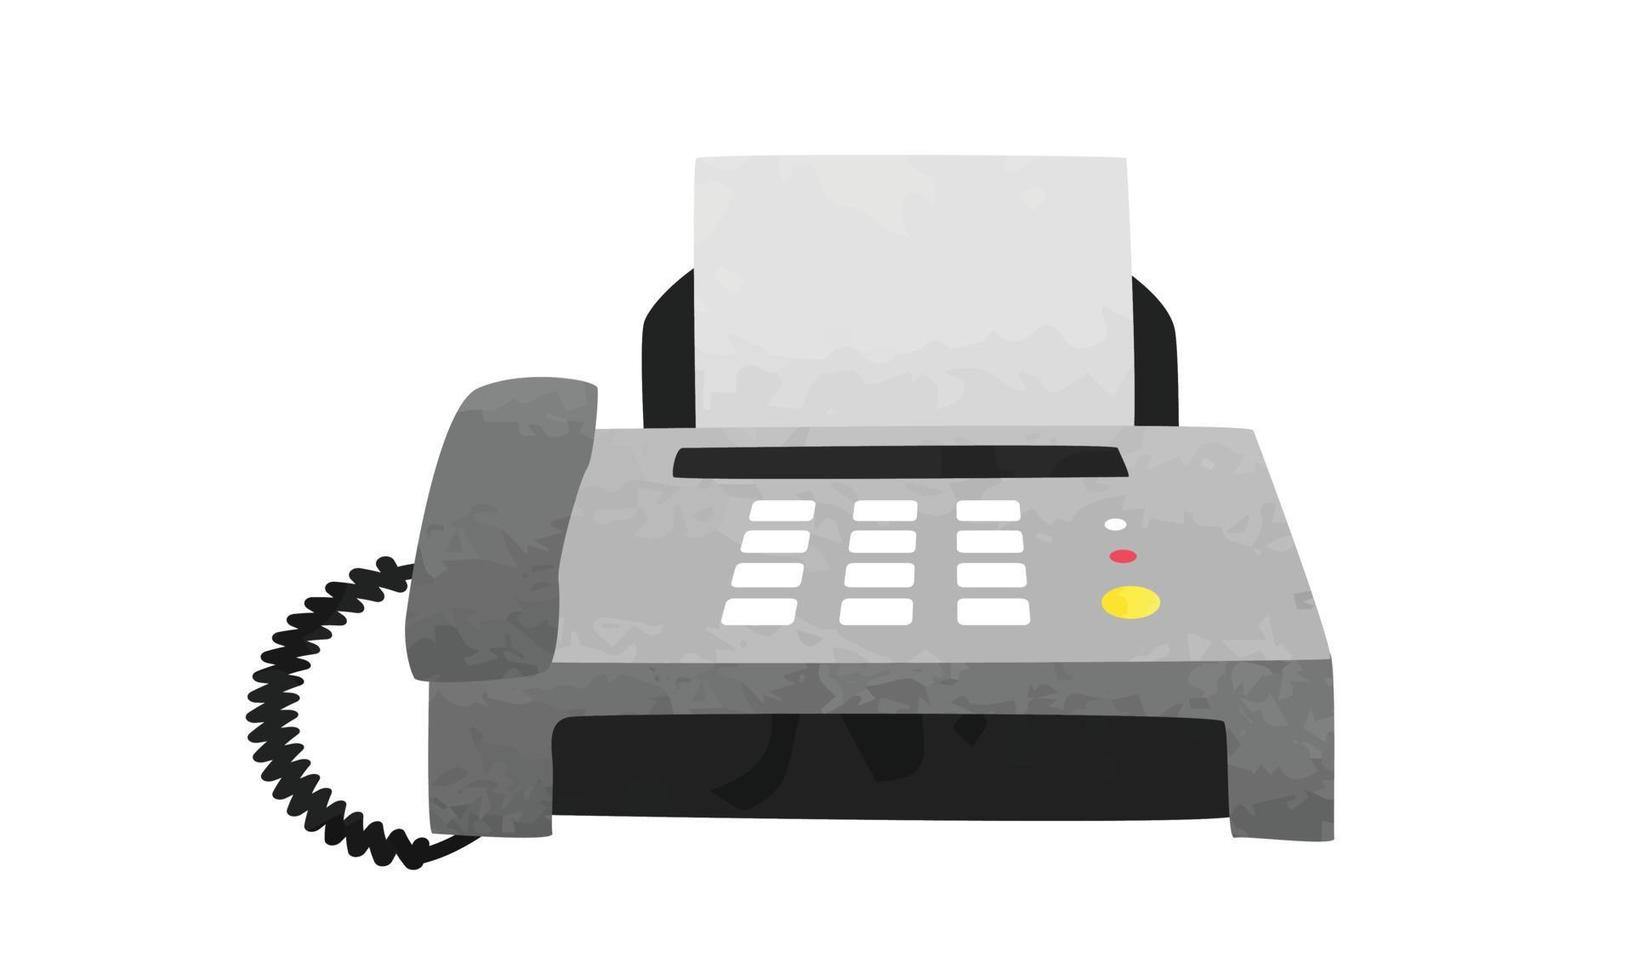 kontor fax maskin ClipArt. enkel fax maskin vattenfärg stil vektor illustration isolerat på vit bakgrund. gammal fax maskin tecknad serie hand dragen klotter stil. kontor apparater teckning. fax vektor